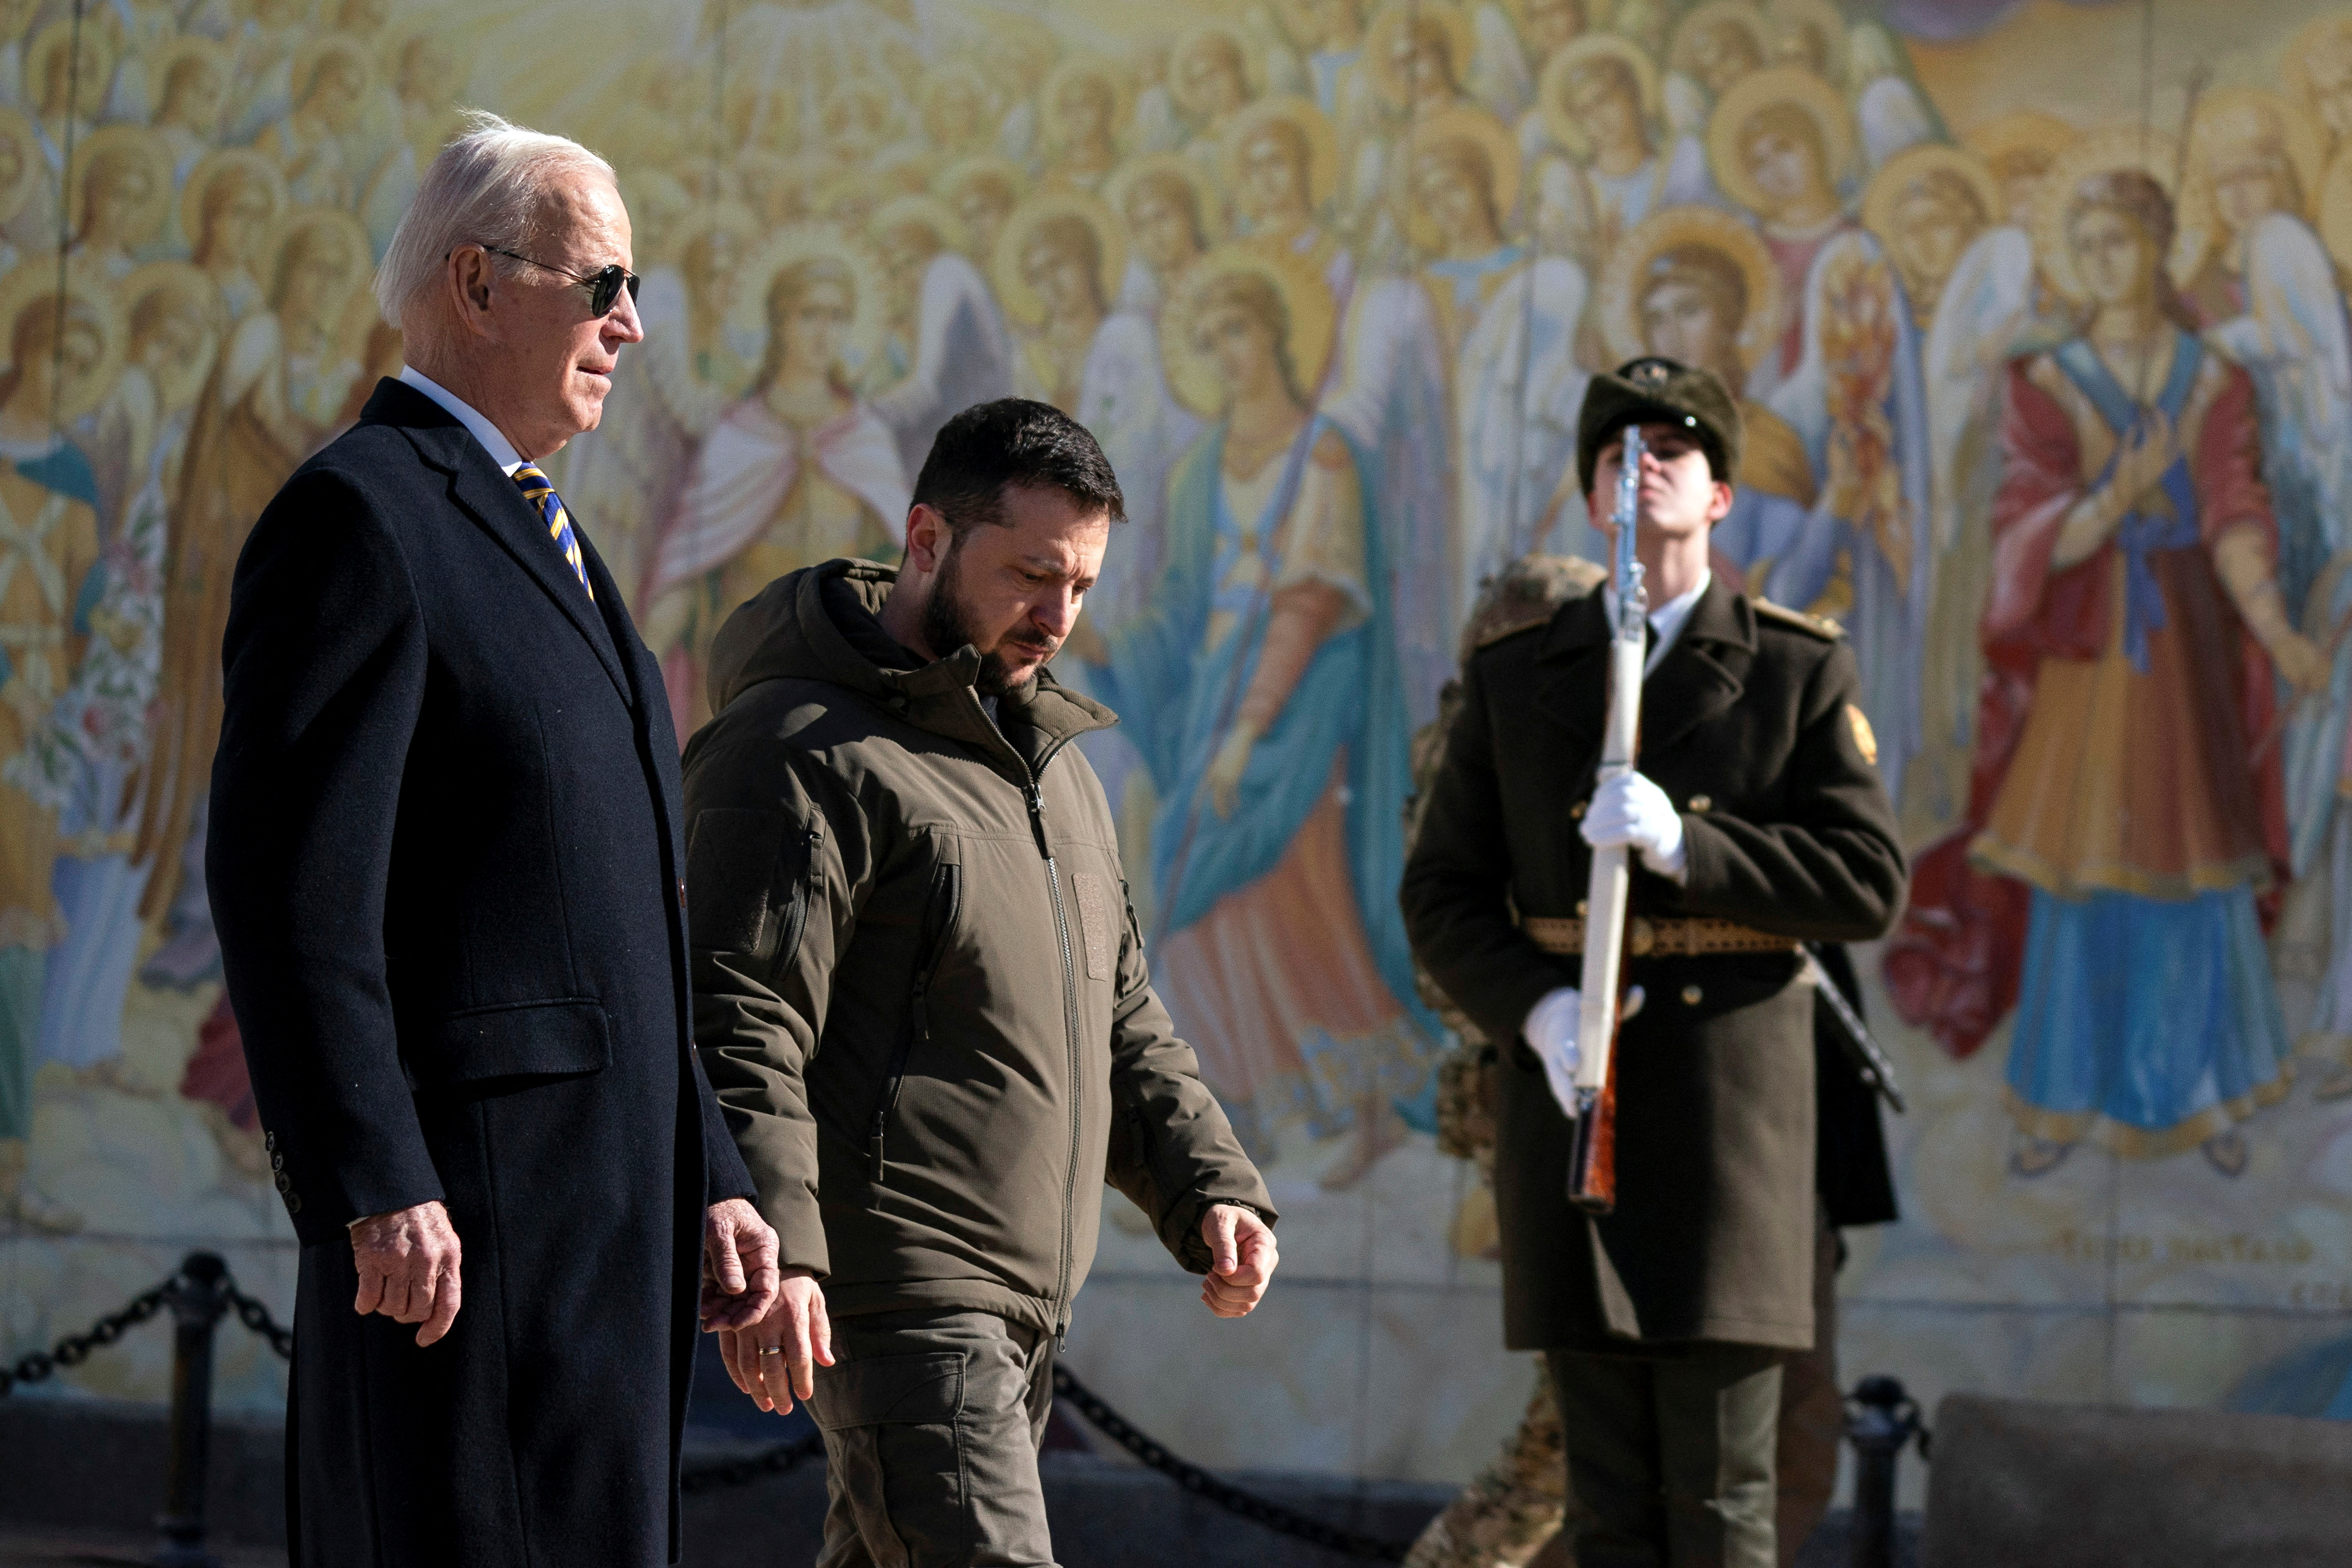 El presidente estadounidense, Joe Biden, camina junto a su par ucraniano, Volodymyr Zelensky, frente a la catedral de St. Michael durante su visita a Kyiv. (Evan Vucci/Pool via REUTERS)